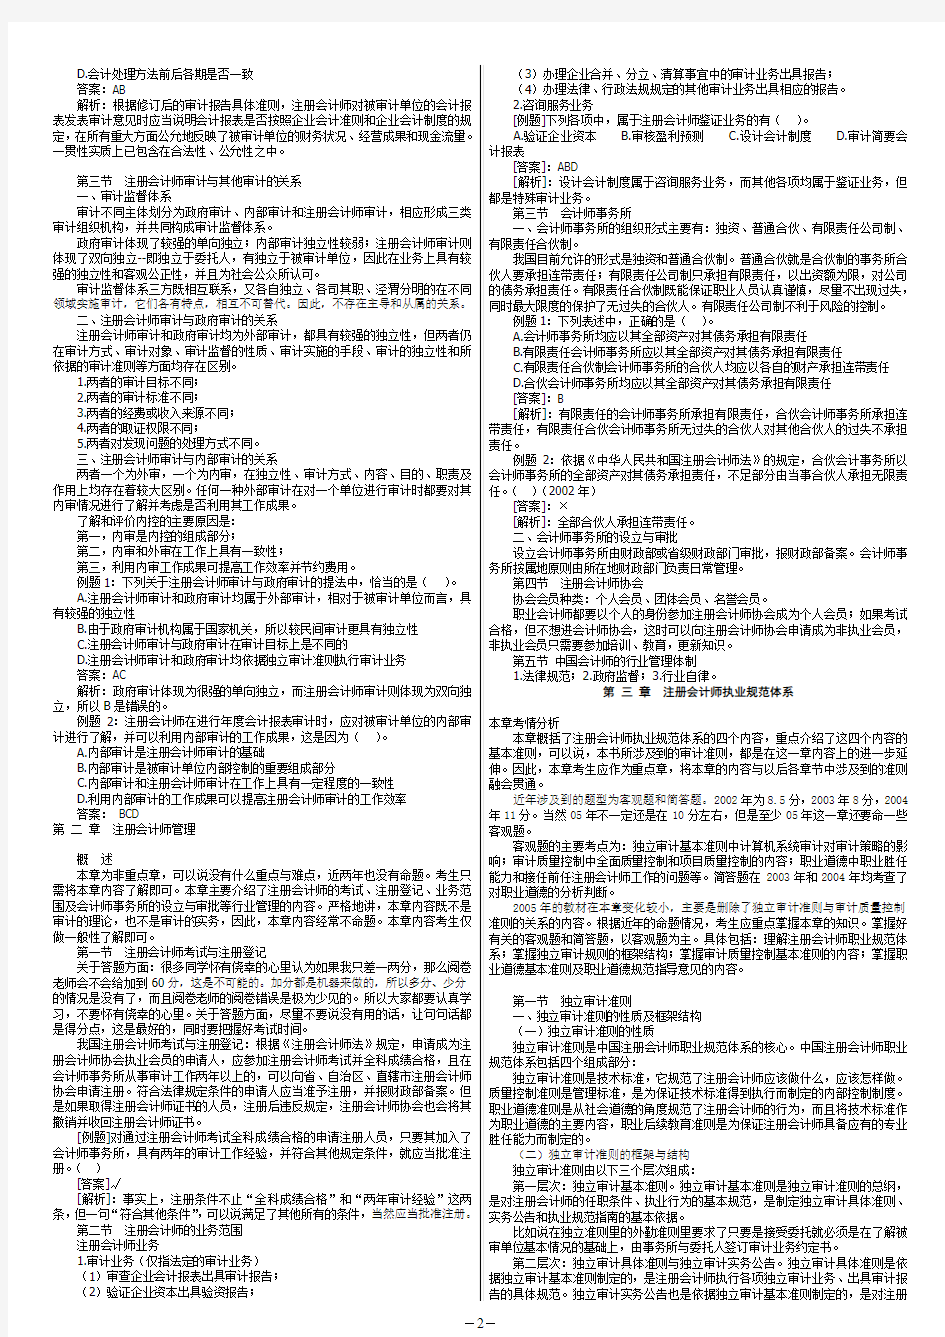 2005杨文萍1-16 cpa审计讲义